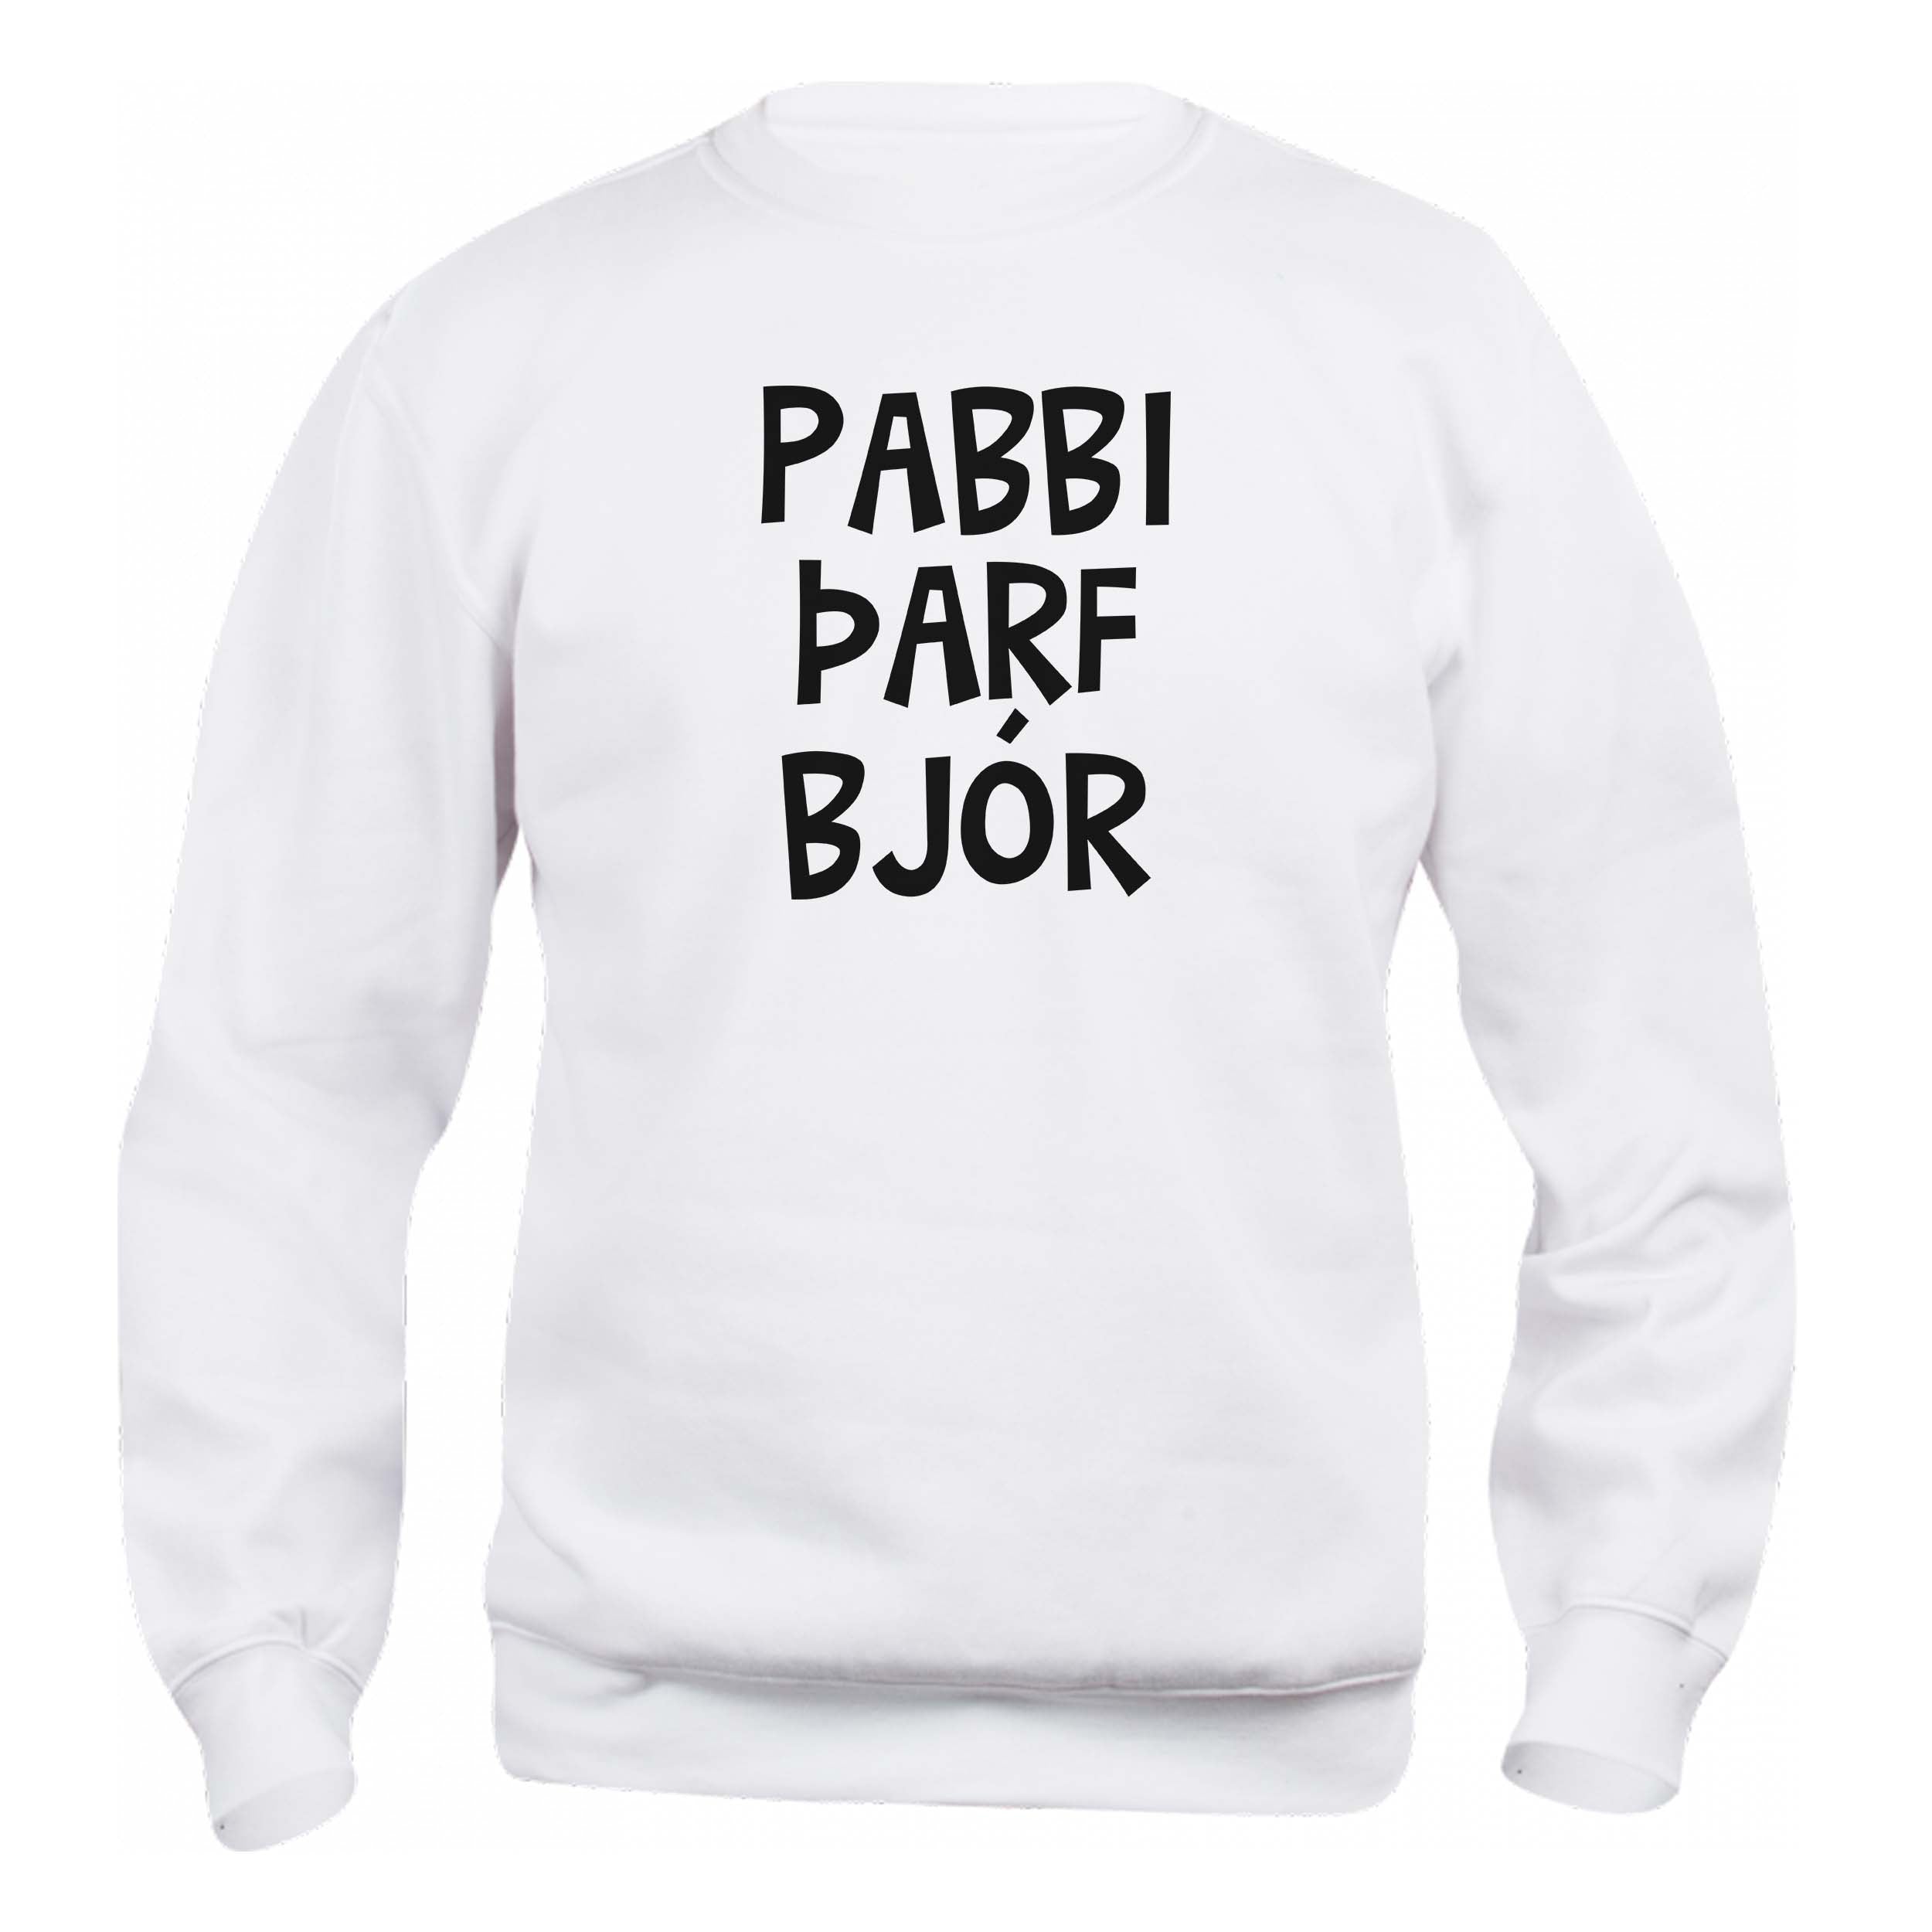 PABBI ÞARF BJÓR - Peysa - Hvít